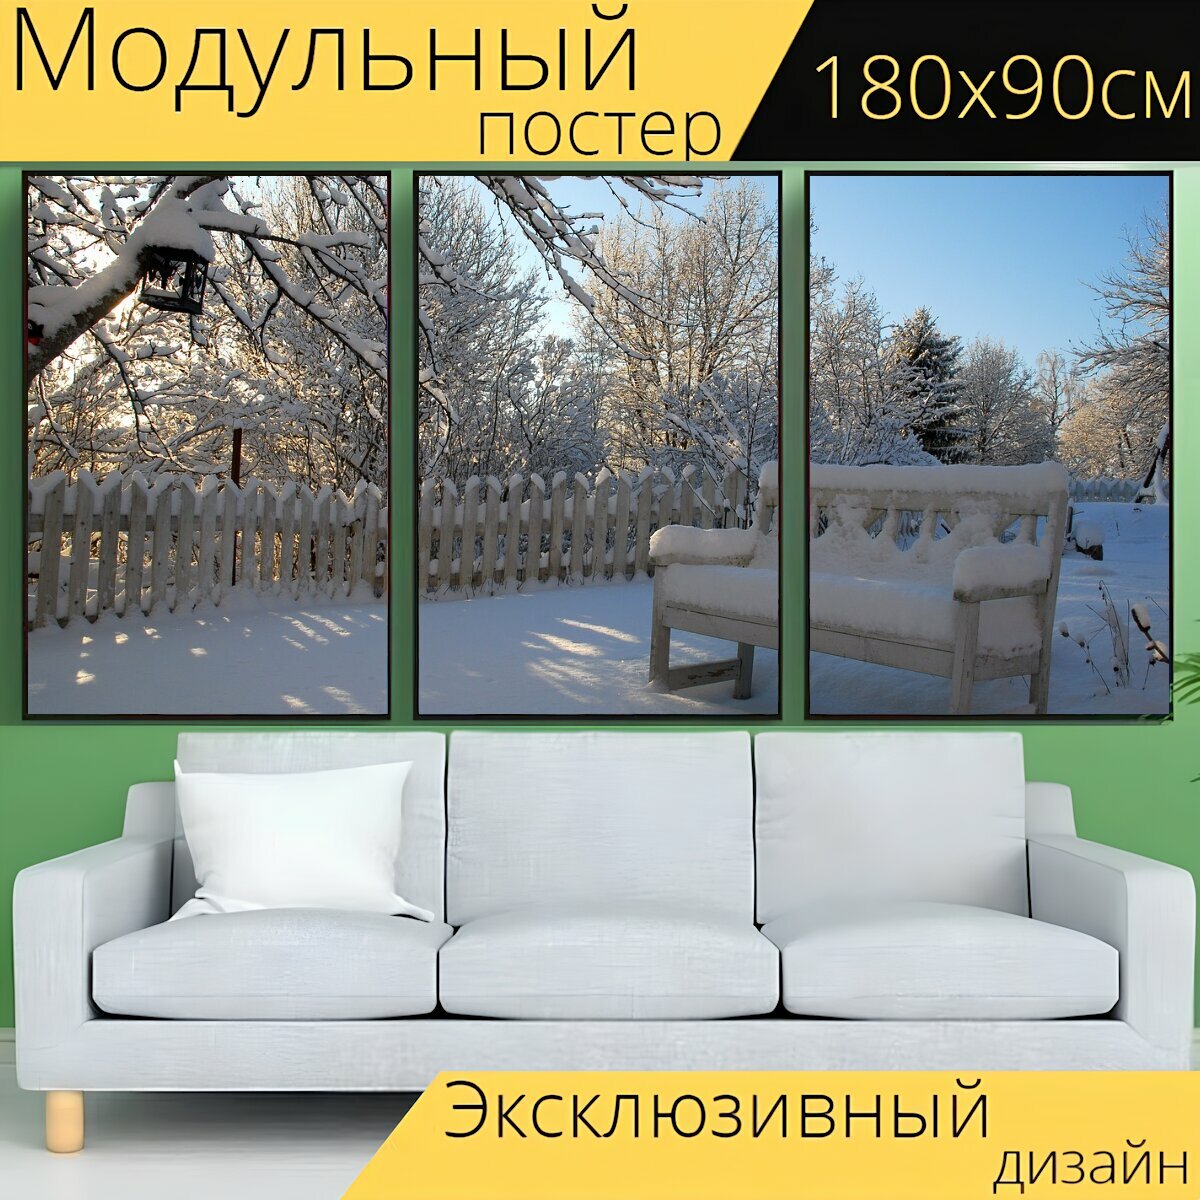 Модульный постер "Стул, снег, зима" 180 x 90 см. для интерьера